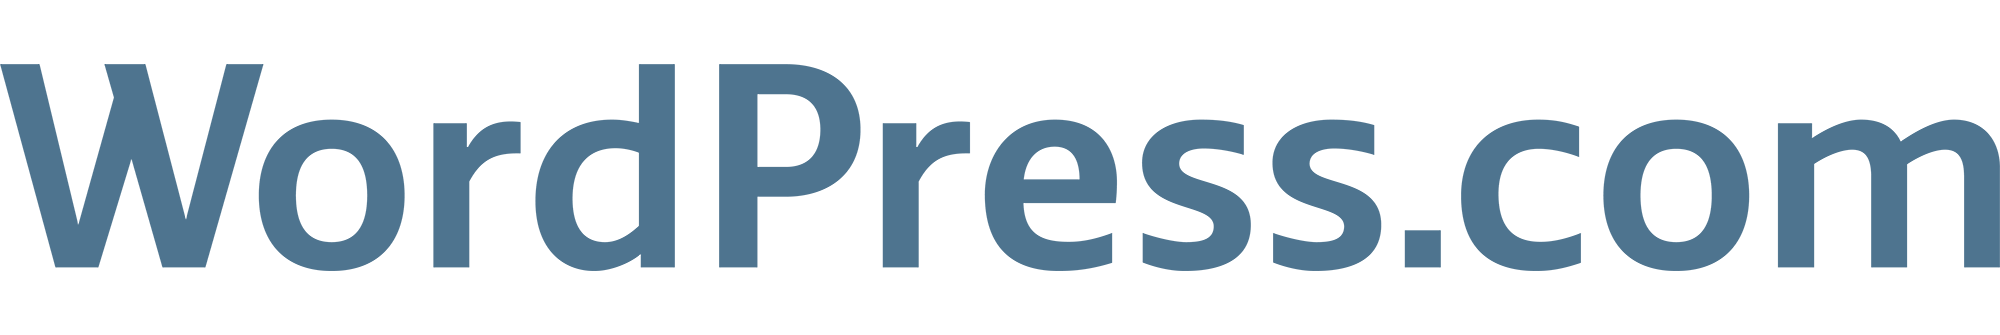 WordPress Logo Background PNG Image